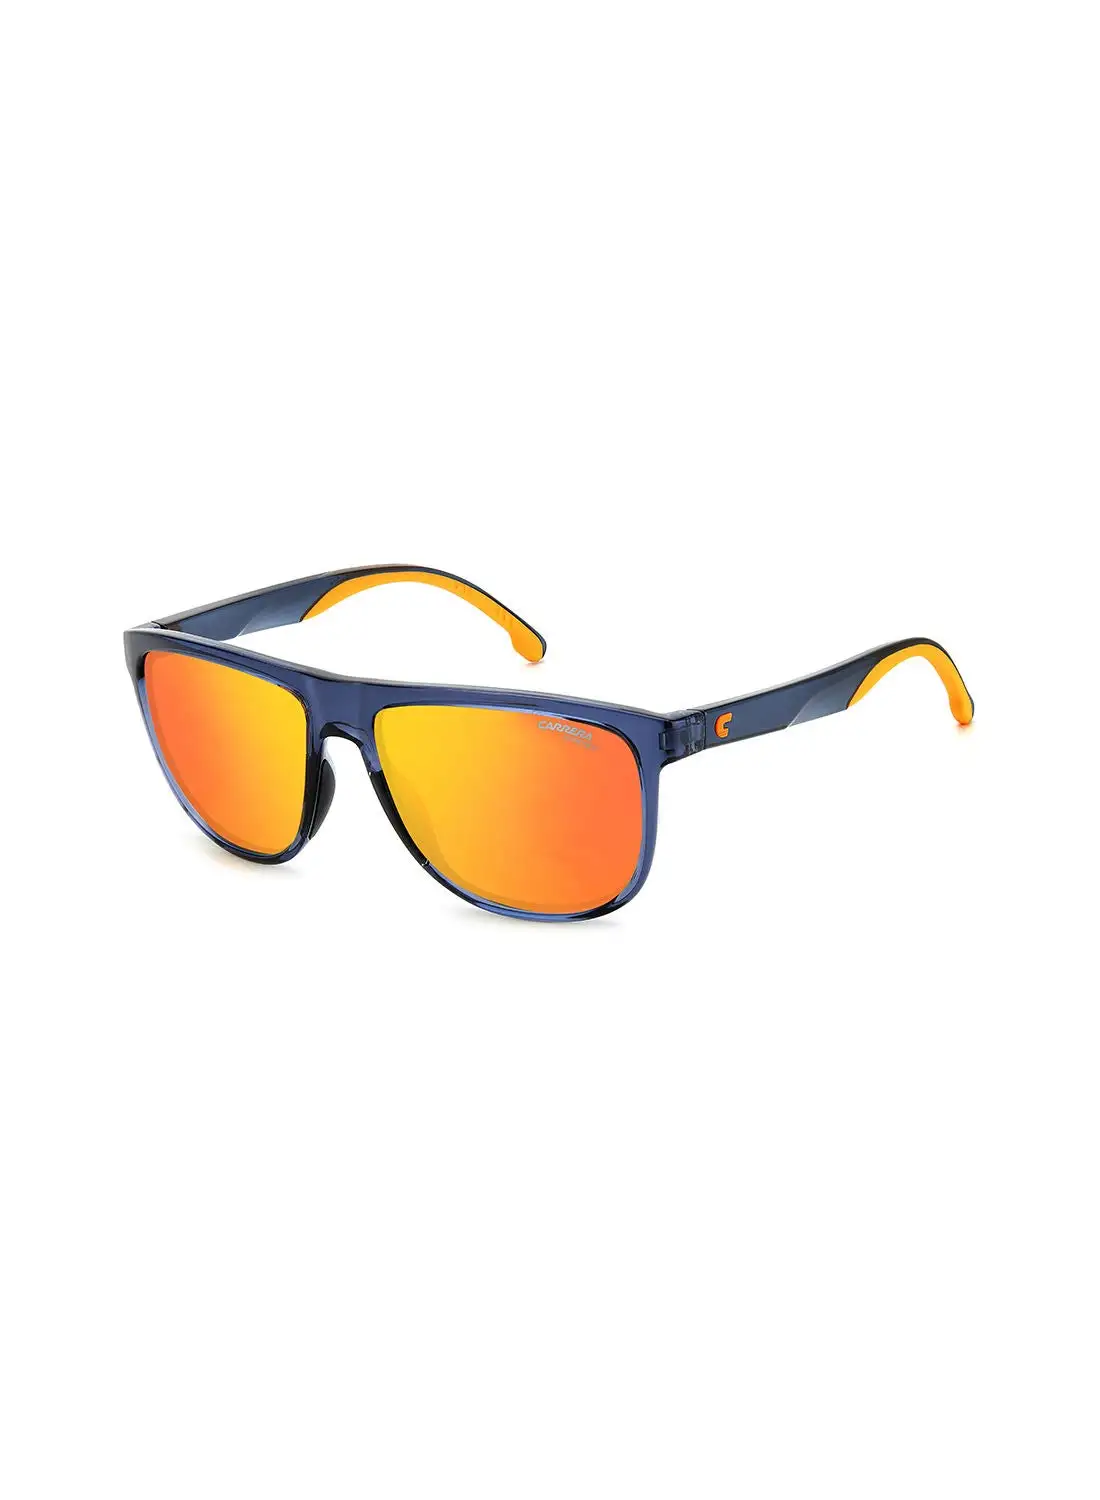 كاريرا نظارة شمسية للرجال للحماية من الأشعة فوق البنفسجية - Carrera 8059/S Blue/Orange 58 - مقاس العدسة: 58 ملم